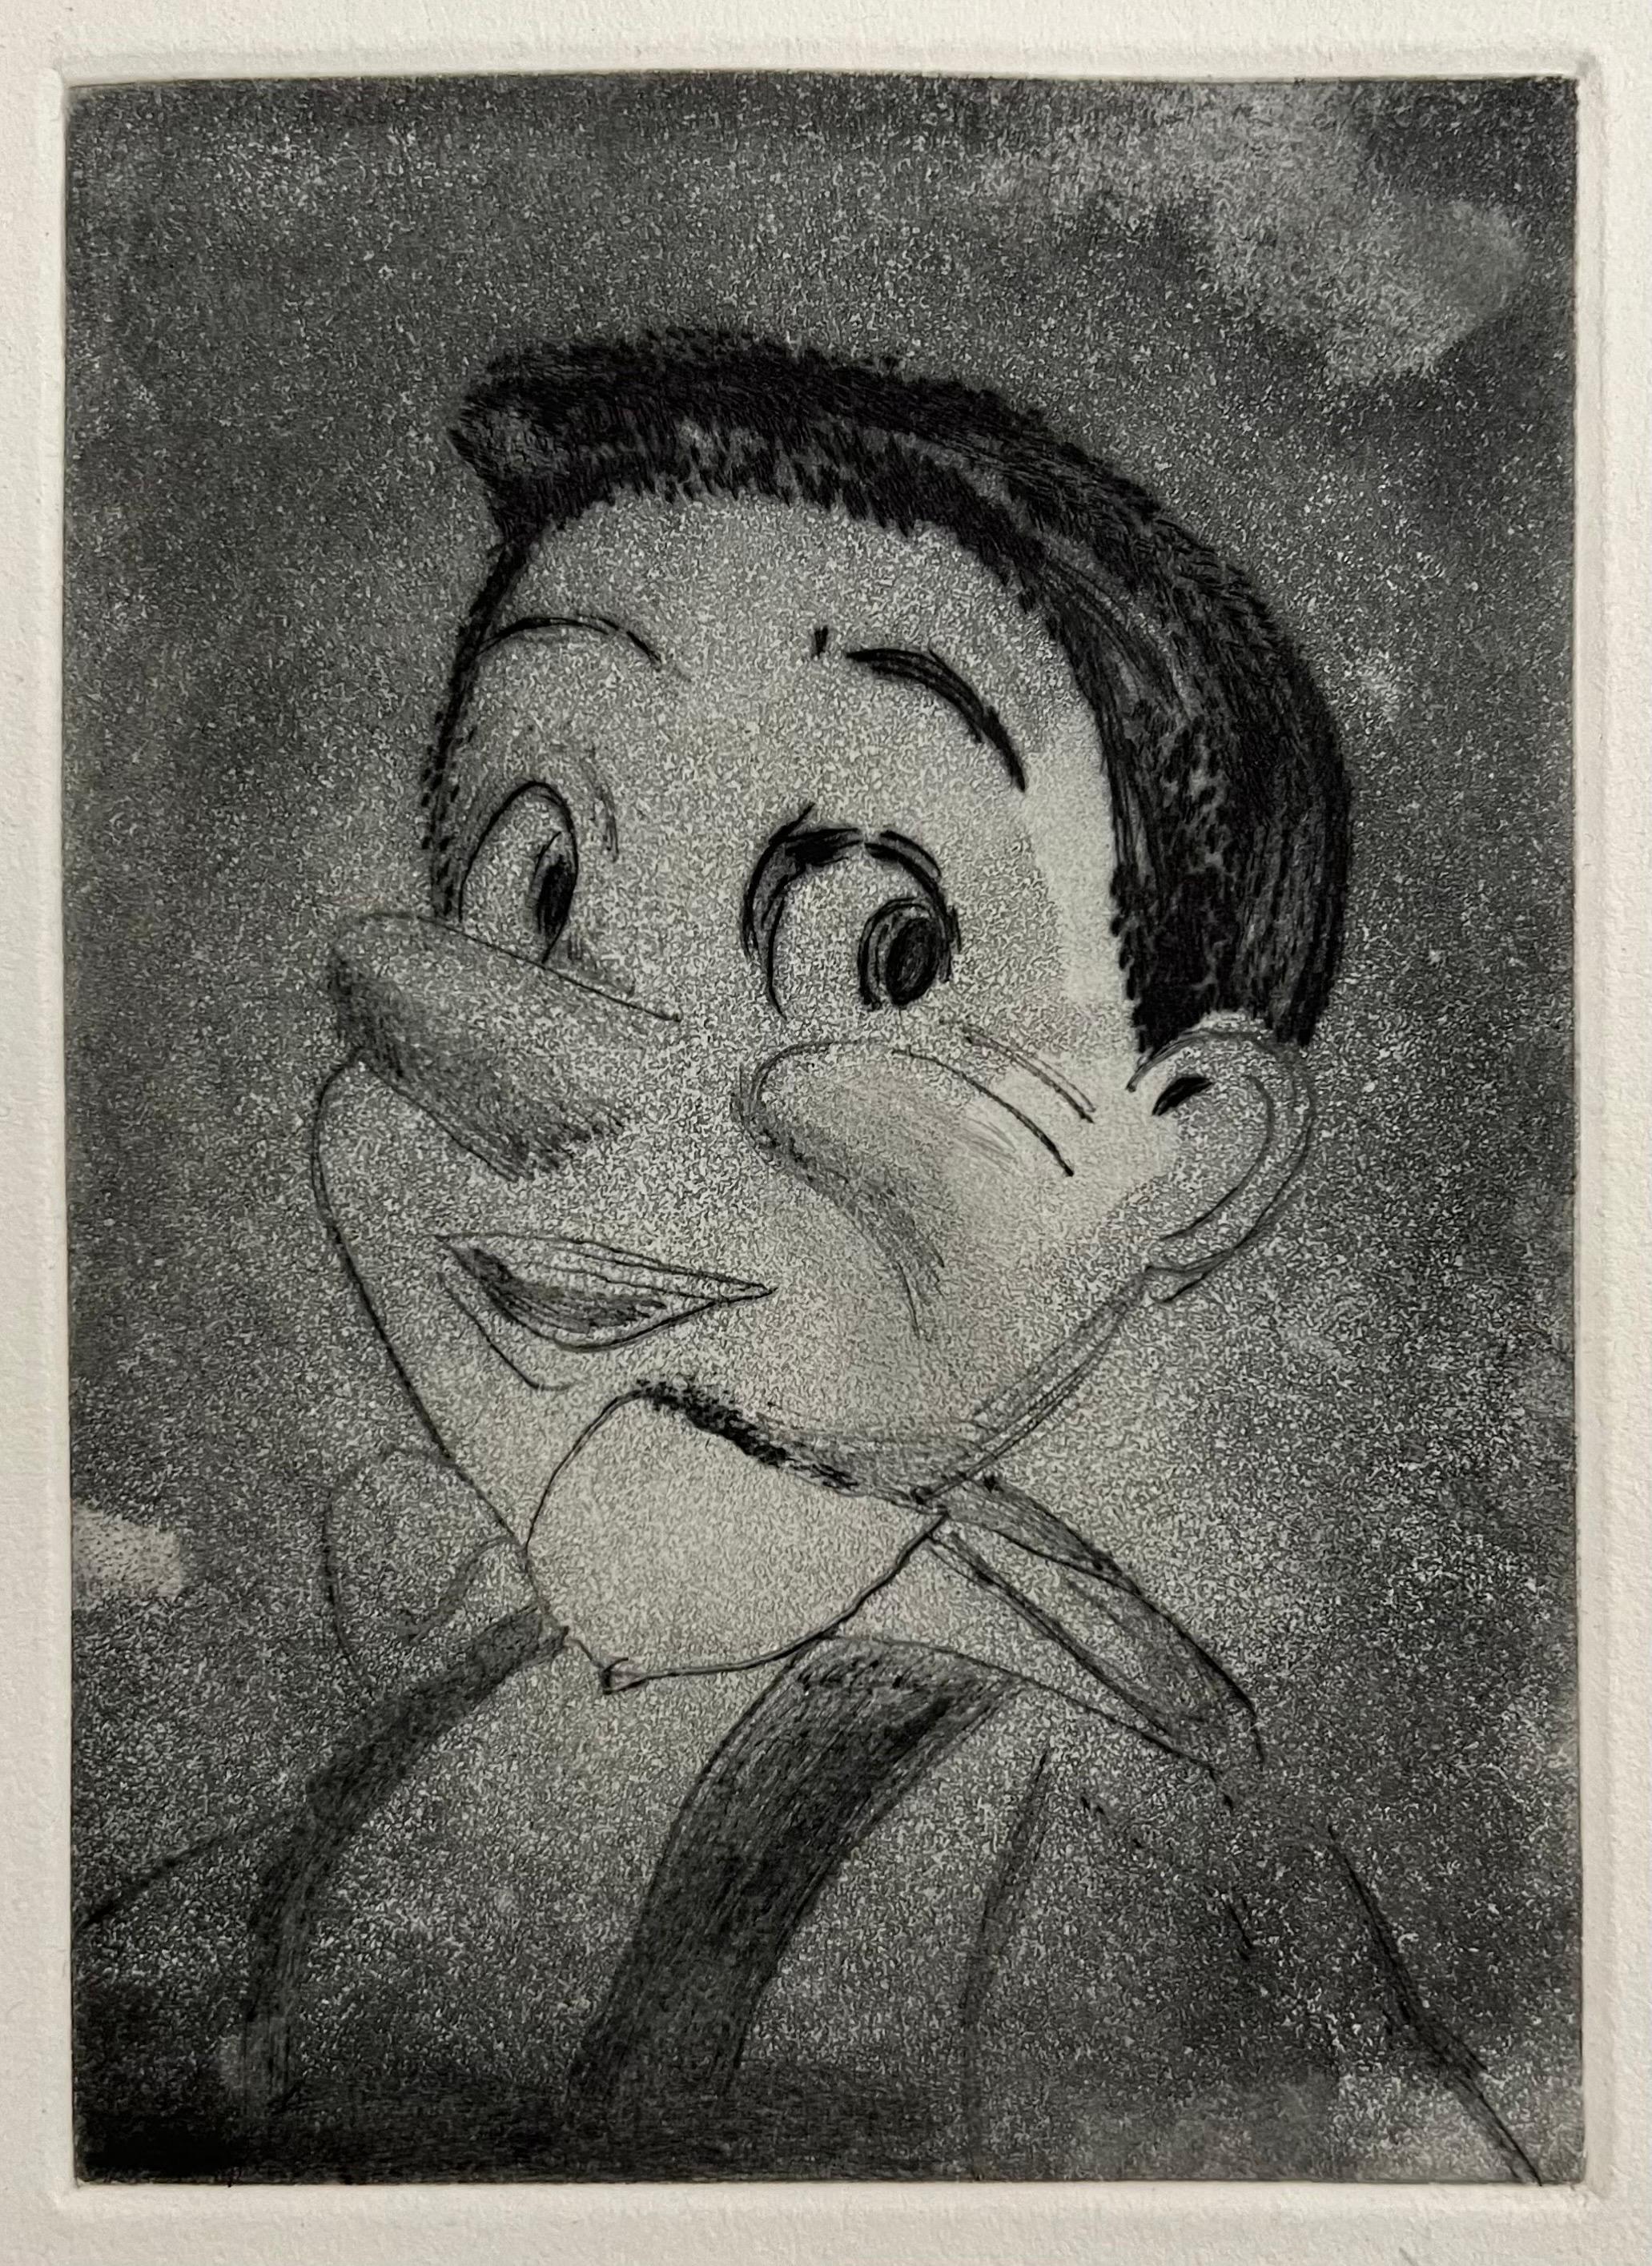 Jim Dine (américain, né en 1935) 
Gravure représentant Pinocchio
Publié par Enitharmon Press pour Whitman College, Londres 1999
Signé à la main au crayon en bas à droite. Dimensions de la feuille : 9" x 7".
Ce document n'est pas numéroté. Il s'agit